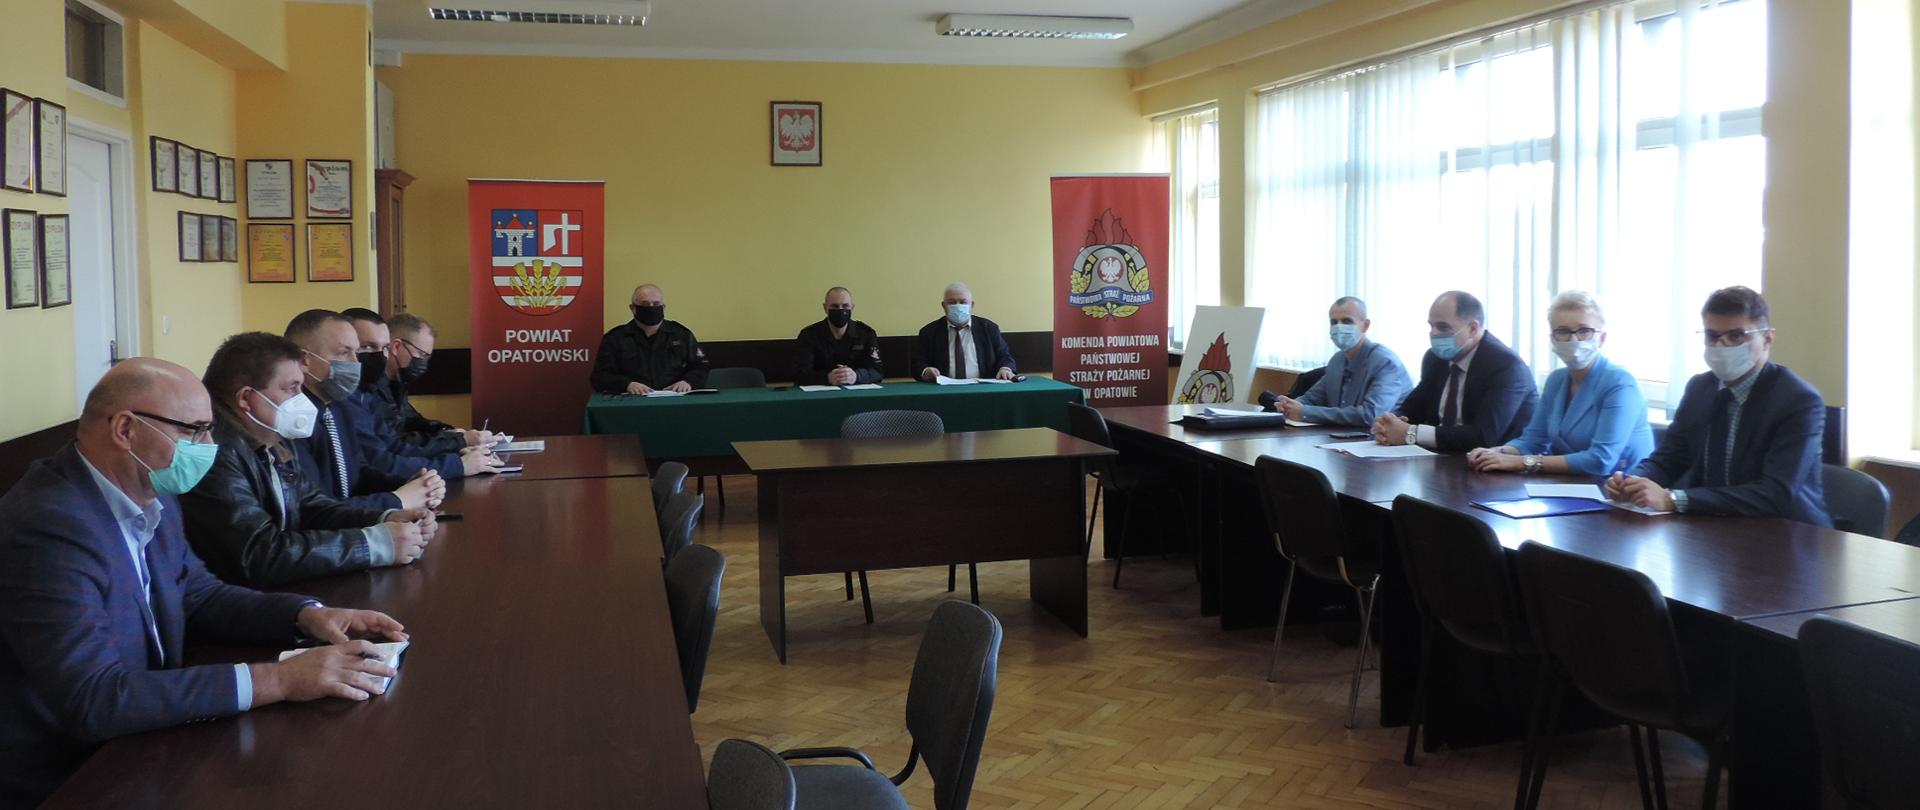 Zdjęcie przedstawia 12 osób siedzących przy stołach. Wśród tych osób znajduje się komendant powiatowy PSP w Opatowie oraz zastępca komendanta powiatowego oraz przedstawiciele jednostek samorządu terytorialnego. W tle dwa banery PSP